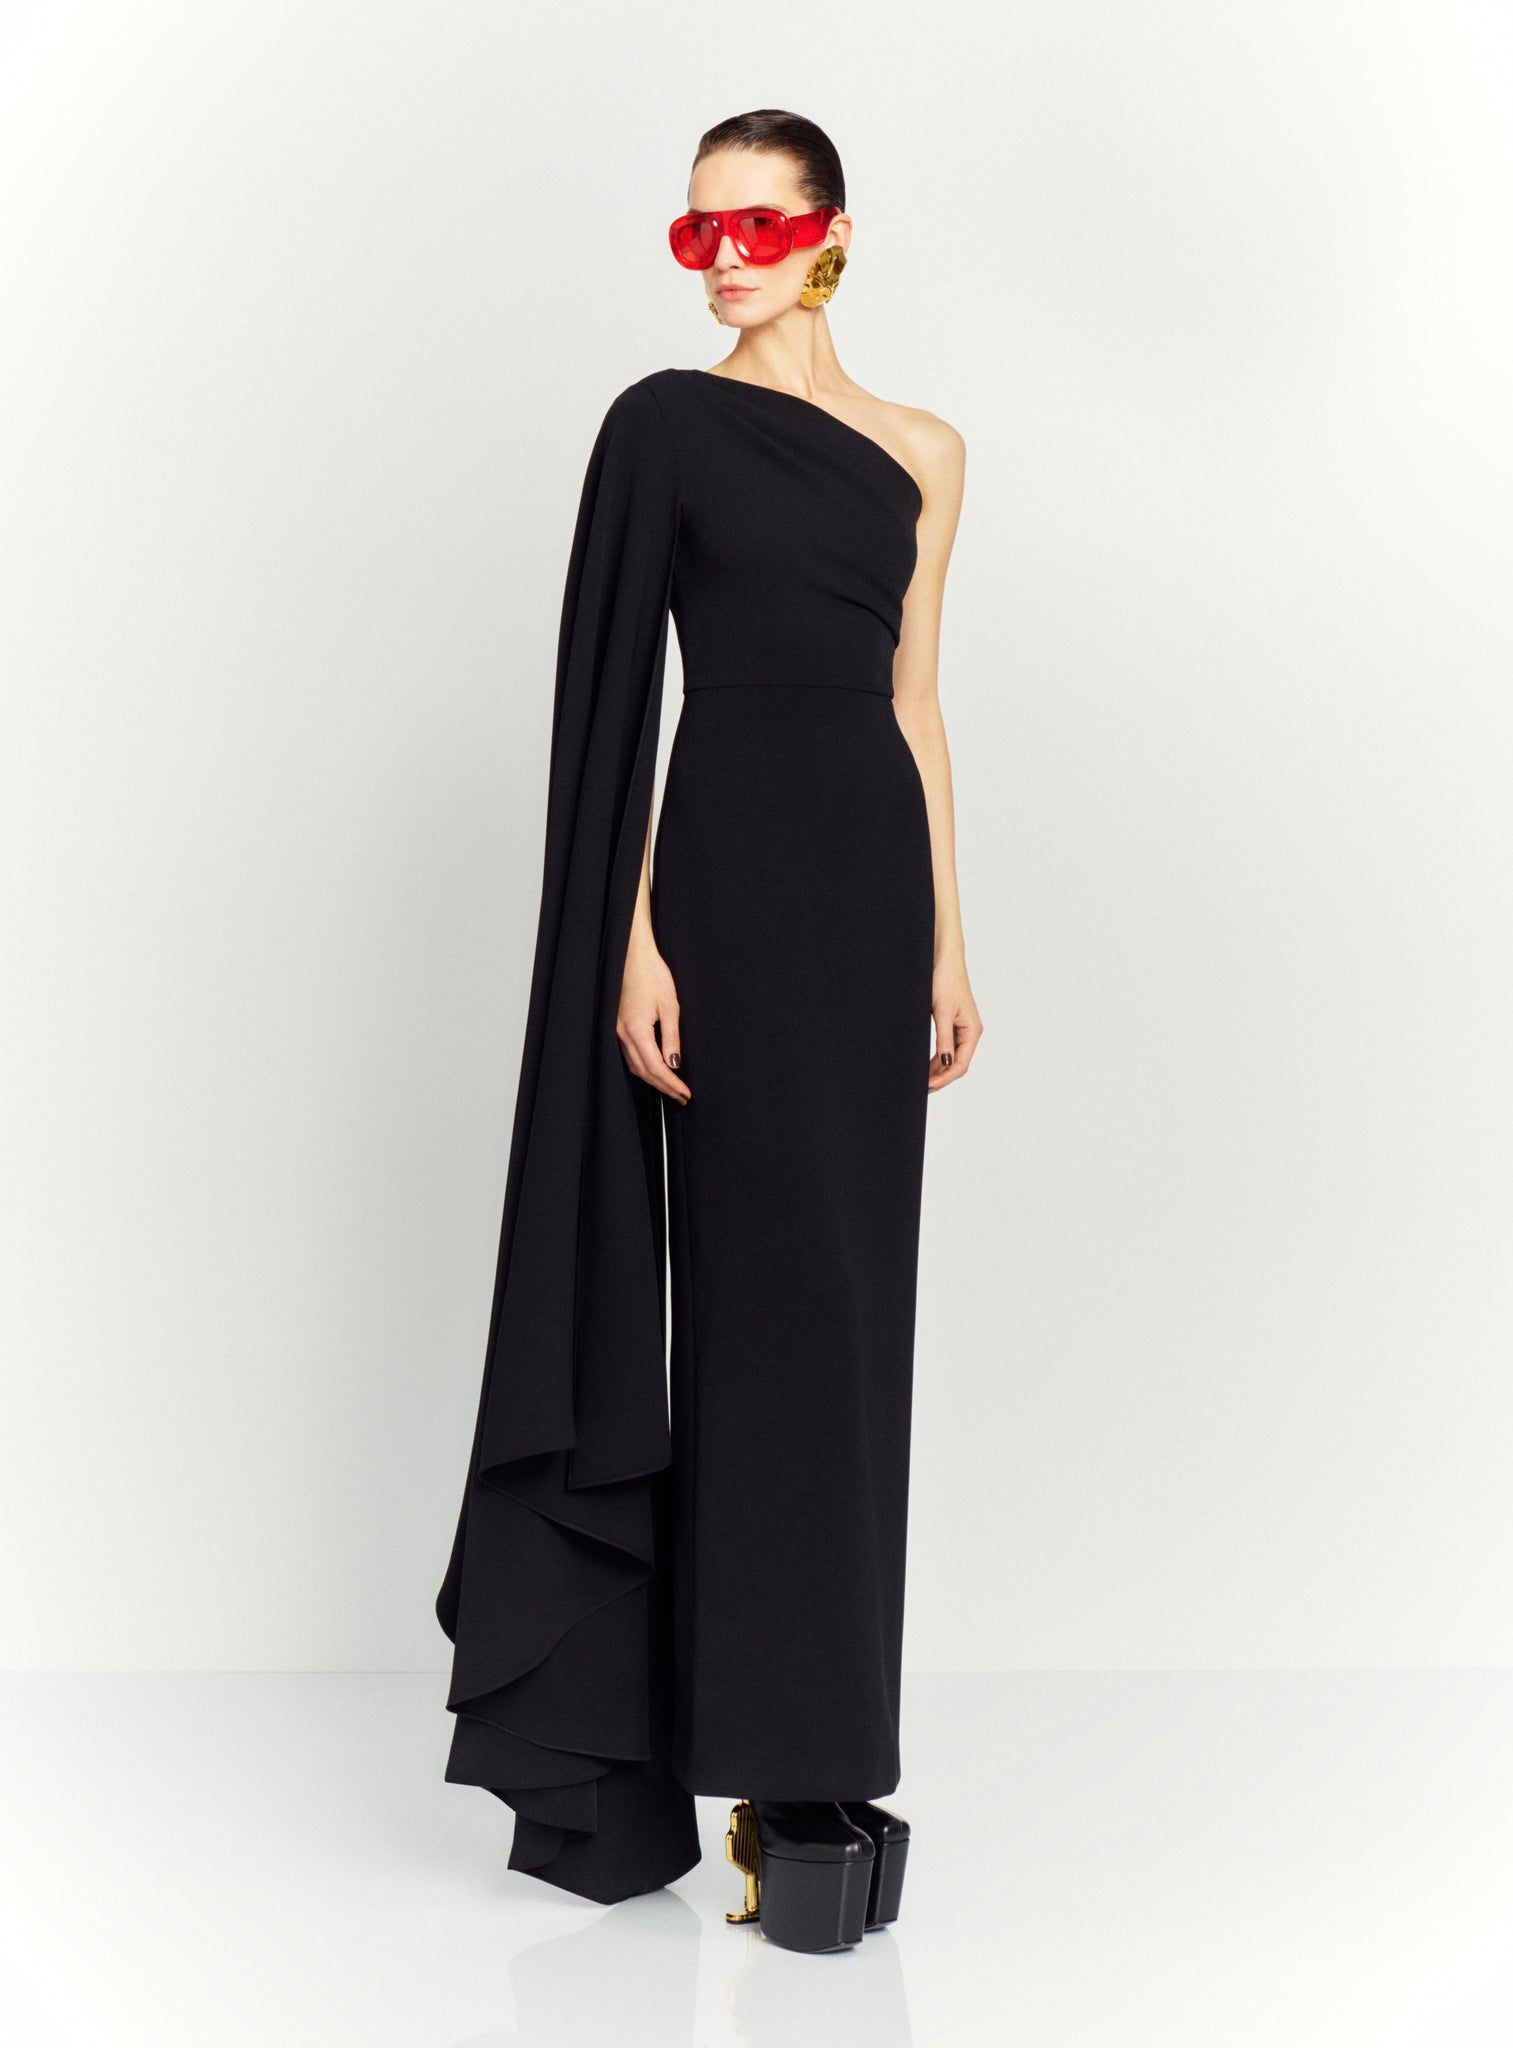 The Daria Maxi Dress in Black